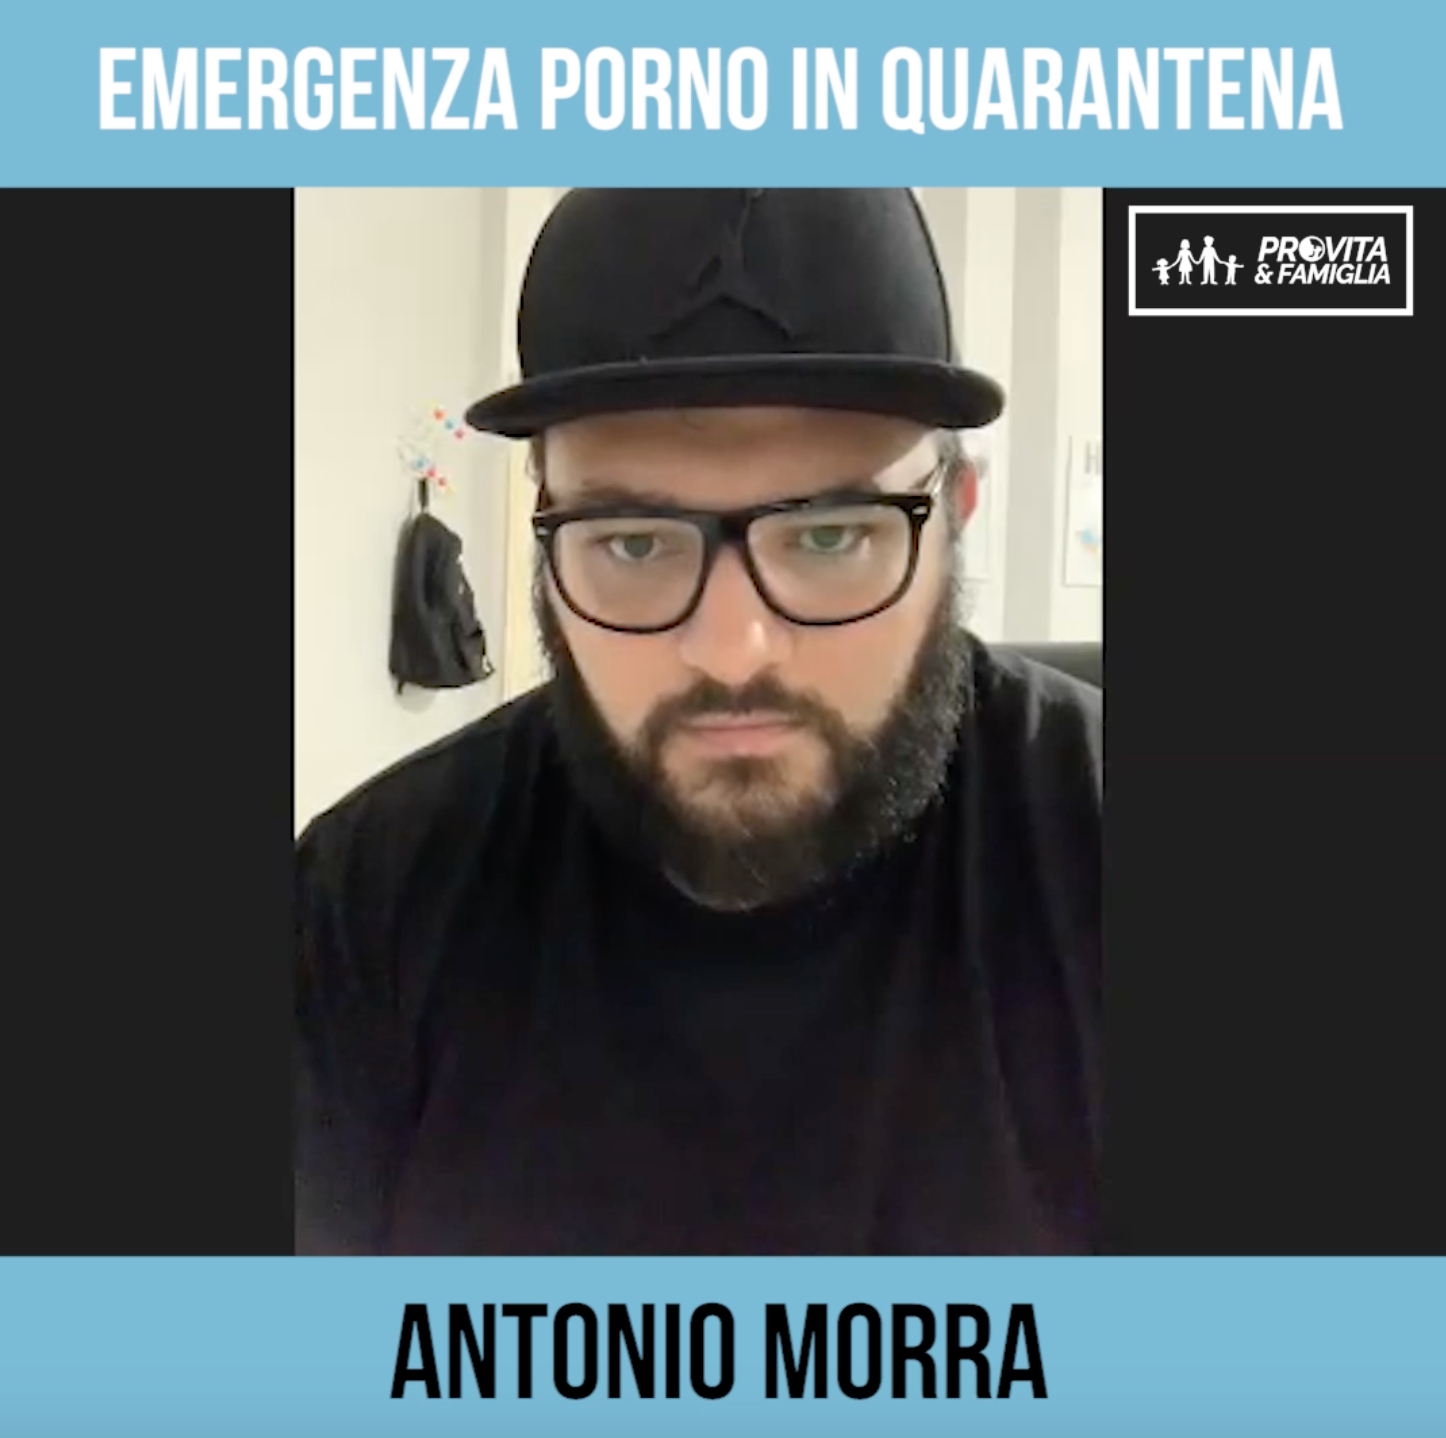 Emergenza porno in quarantena – Il commento di Antonio Morra (VIDEO) 1